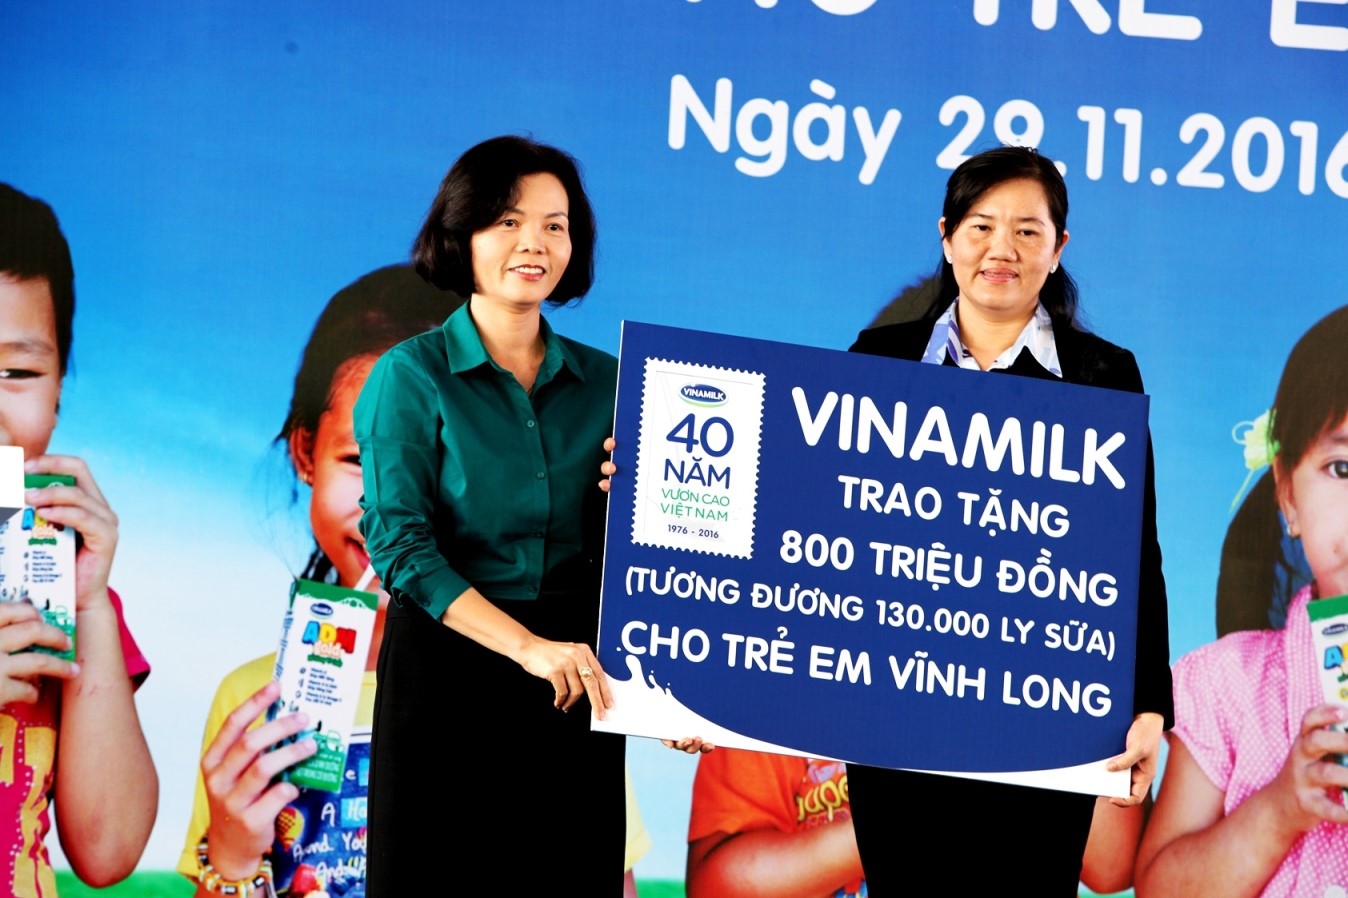 Bà Bùi Thị Hương – Giám đốc điều hành Vinamilk trao tặng bảng tượ ng trưng 130.000 ly sữa với tổng trị giá 800 triệu đồng của Quỹ Sữa Vươn Cao Việt Nam cho học sinh nghèo Vĩnh Long